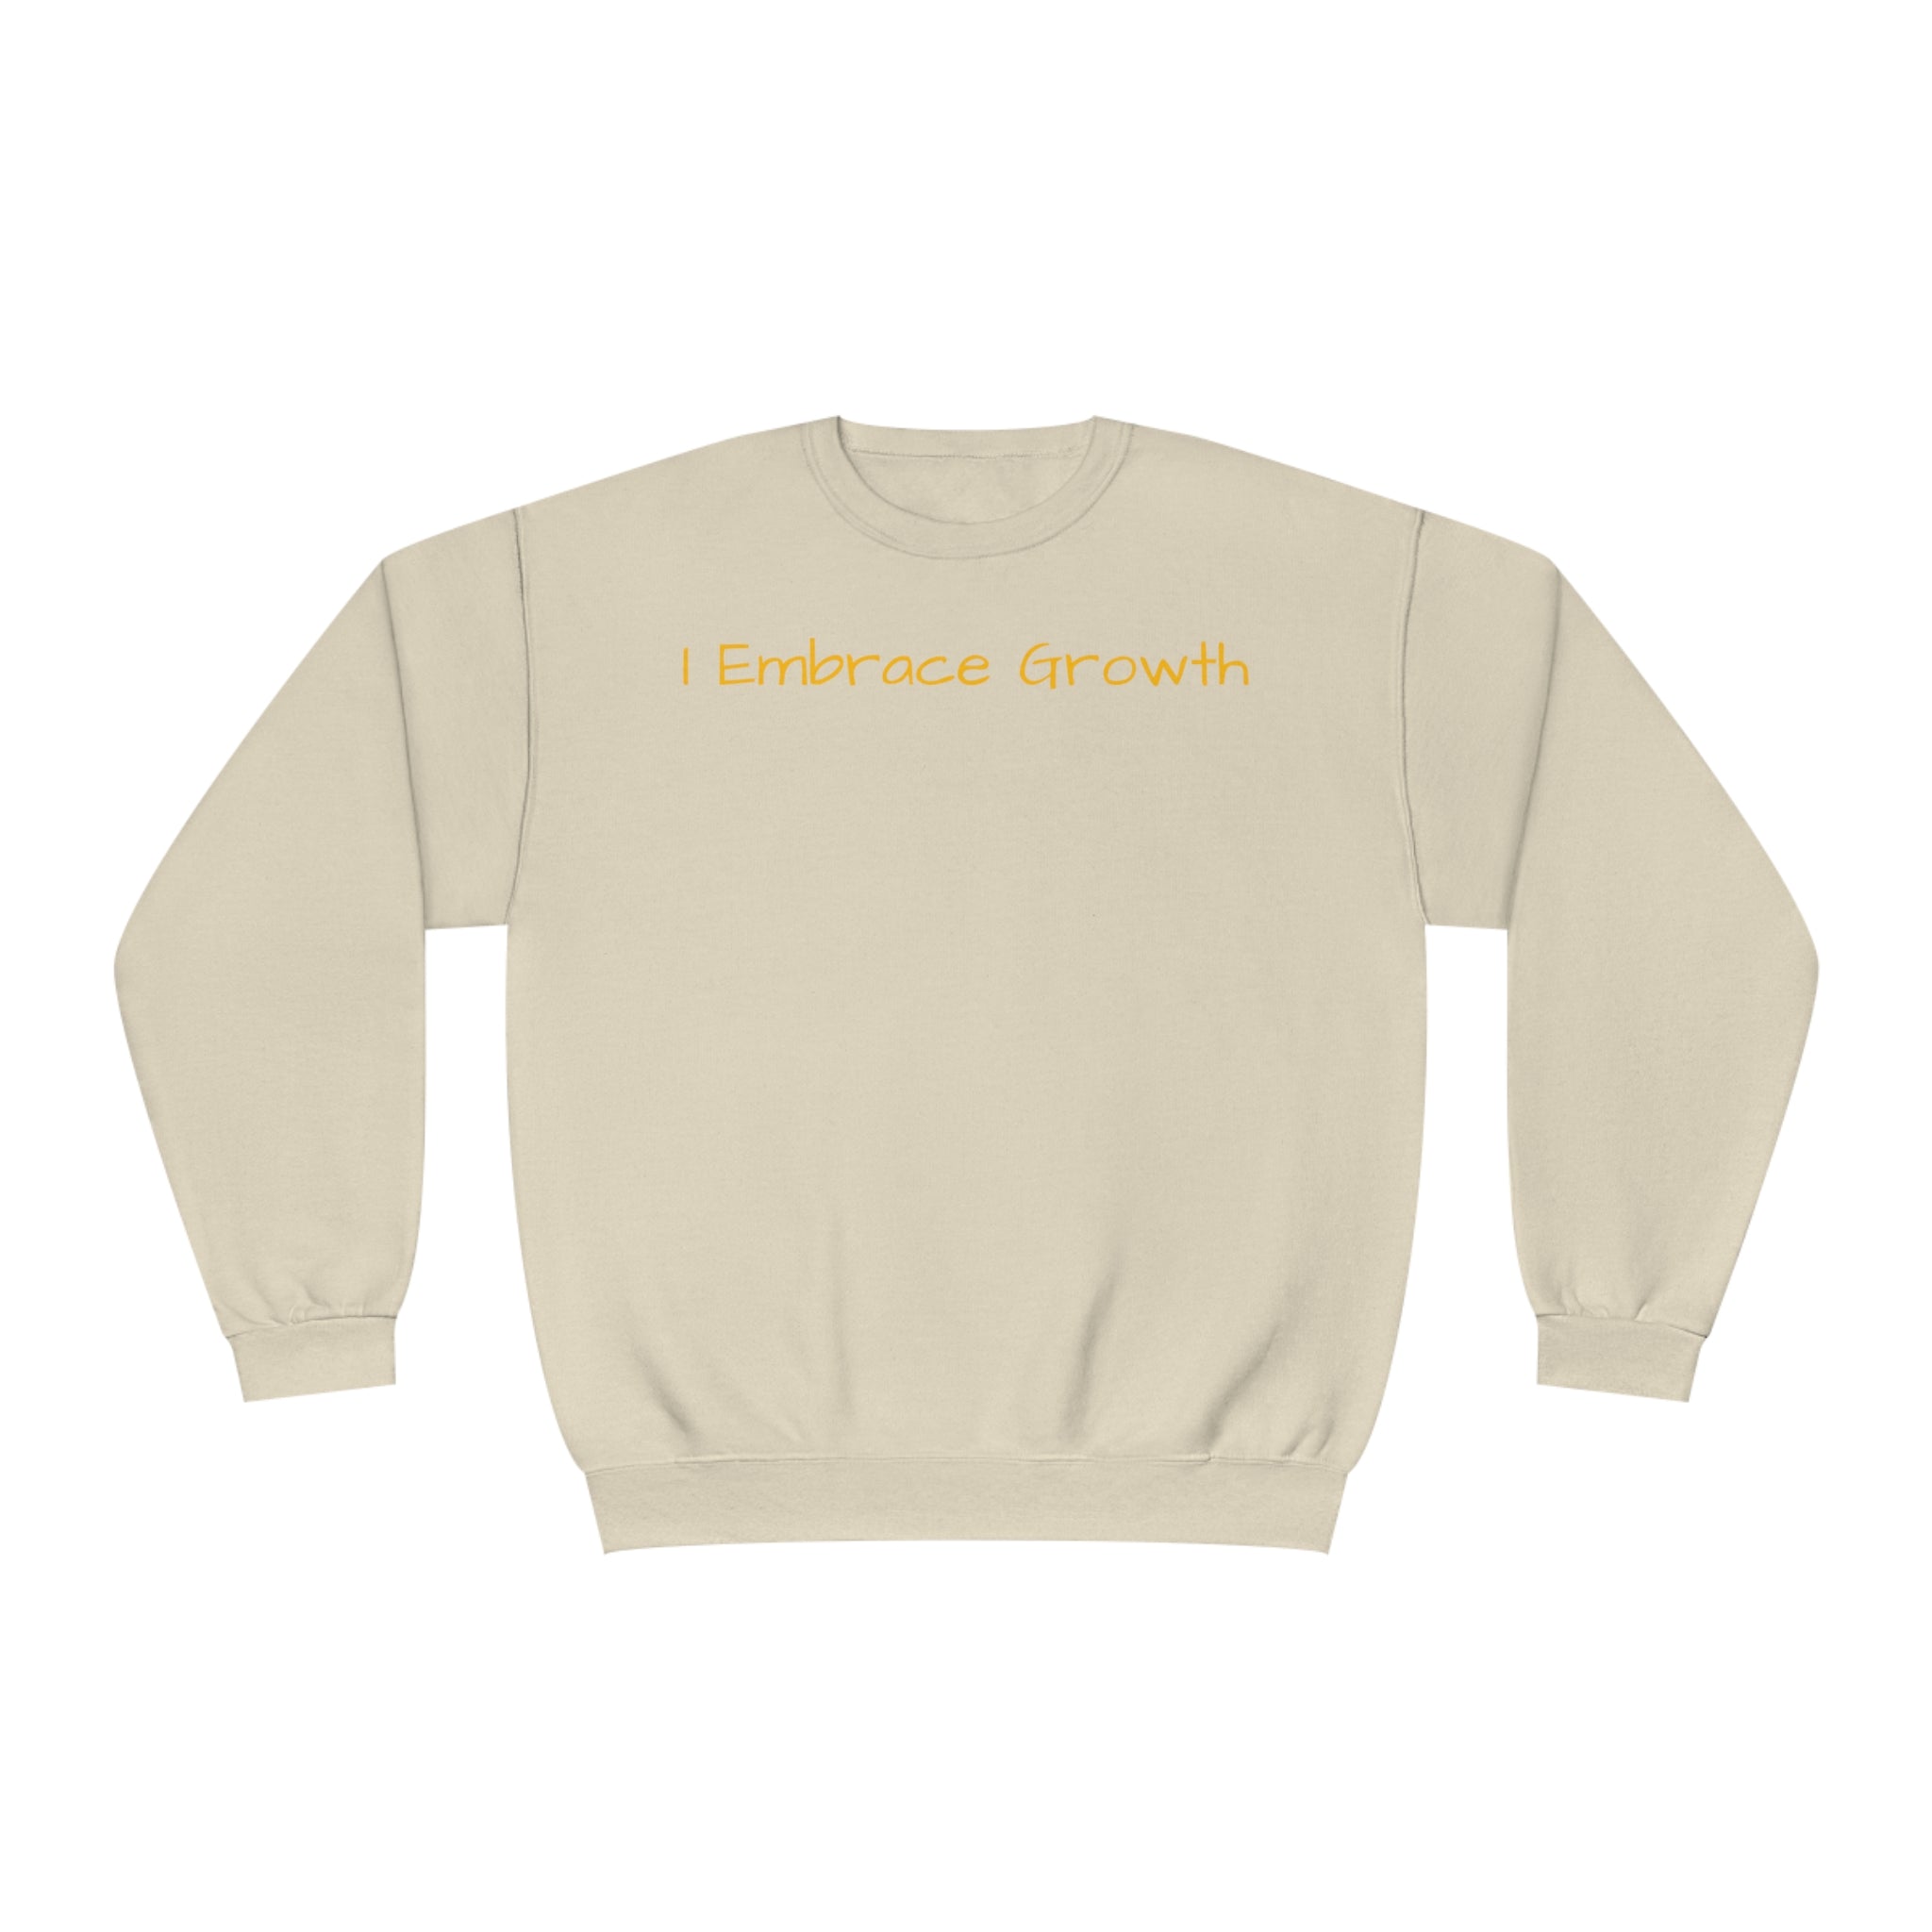 I Embrace Growth Fleece Sweatshirt: Comfort & Style Sandstone Comfy Sweater Cozy Sweatshirt Crewneck Sweatshirt Fleece Pullover Graphic Sweatshirt Men's Sweatshirt Streatwear Sweatshirt Warm Outerwear Women's Sweatshirt Sweatshirt 1013040160662913823_2048 Printify